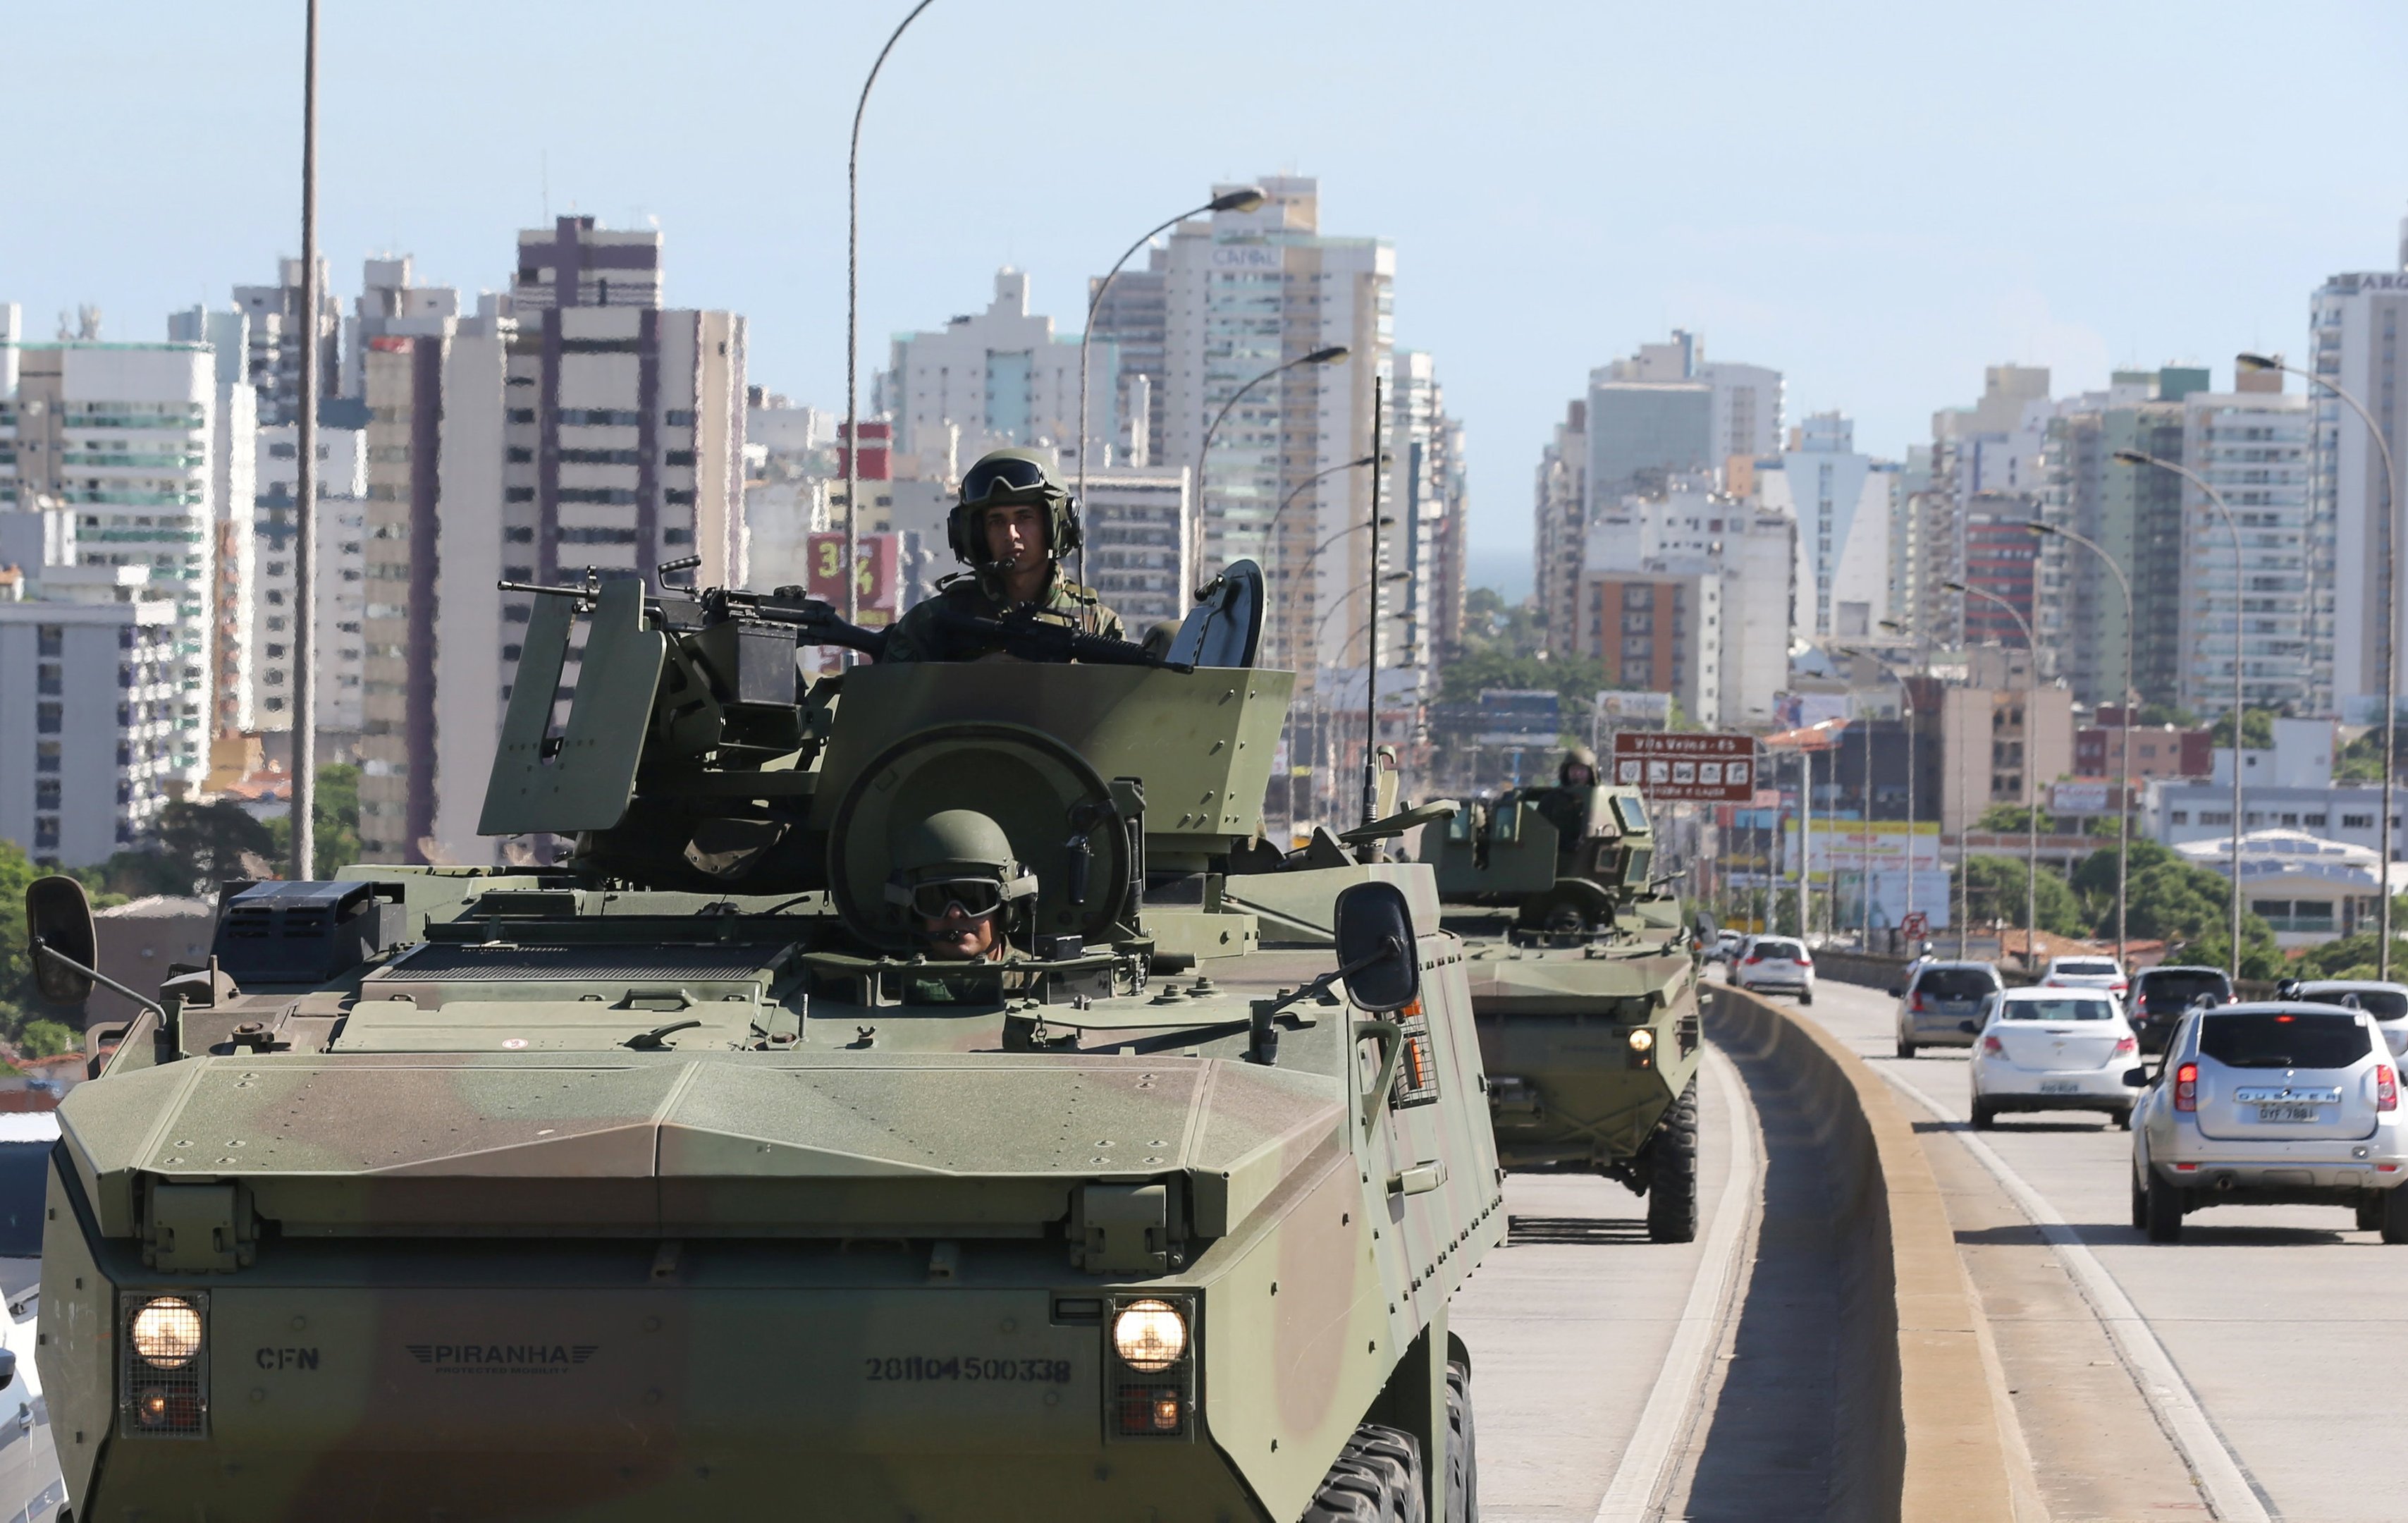 Exército brasileiro patrulha as ruas de Vitória, no Espírito Santo, dia 09/02/2017